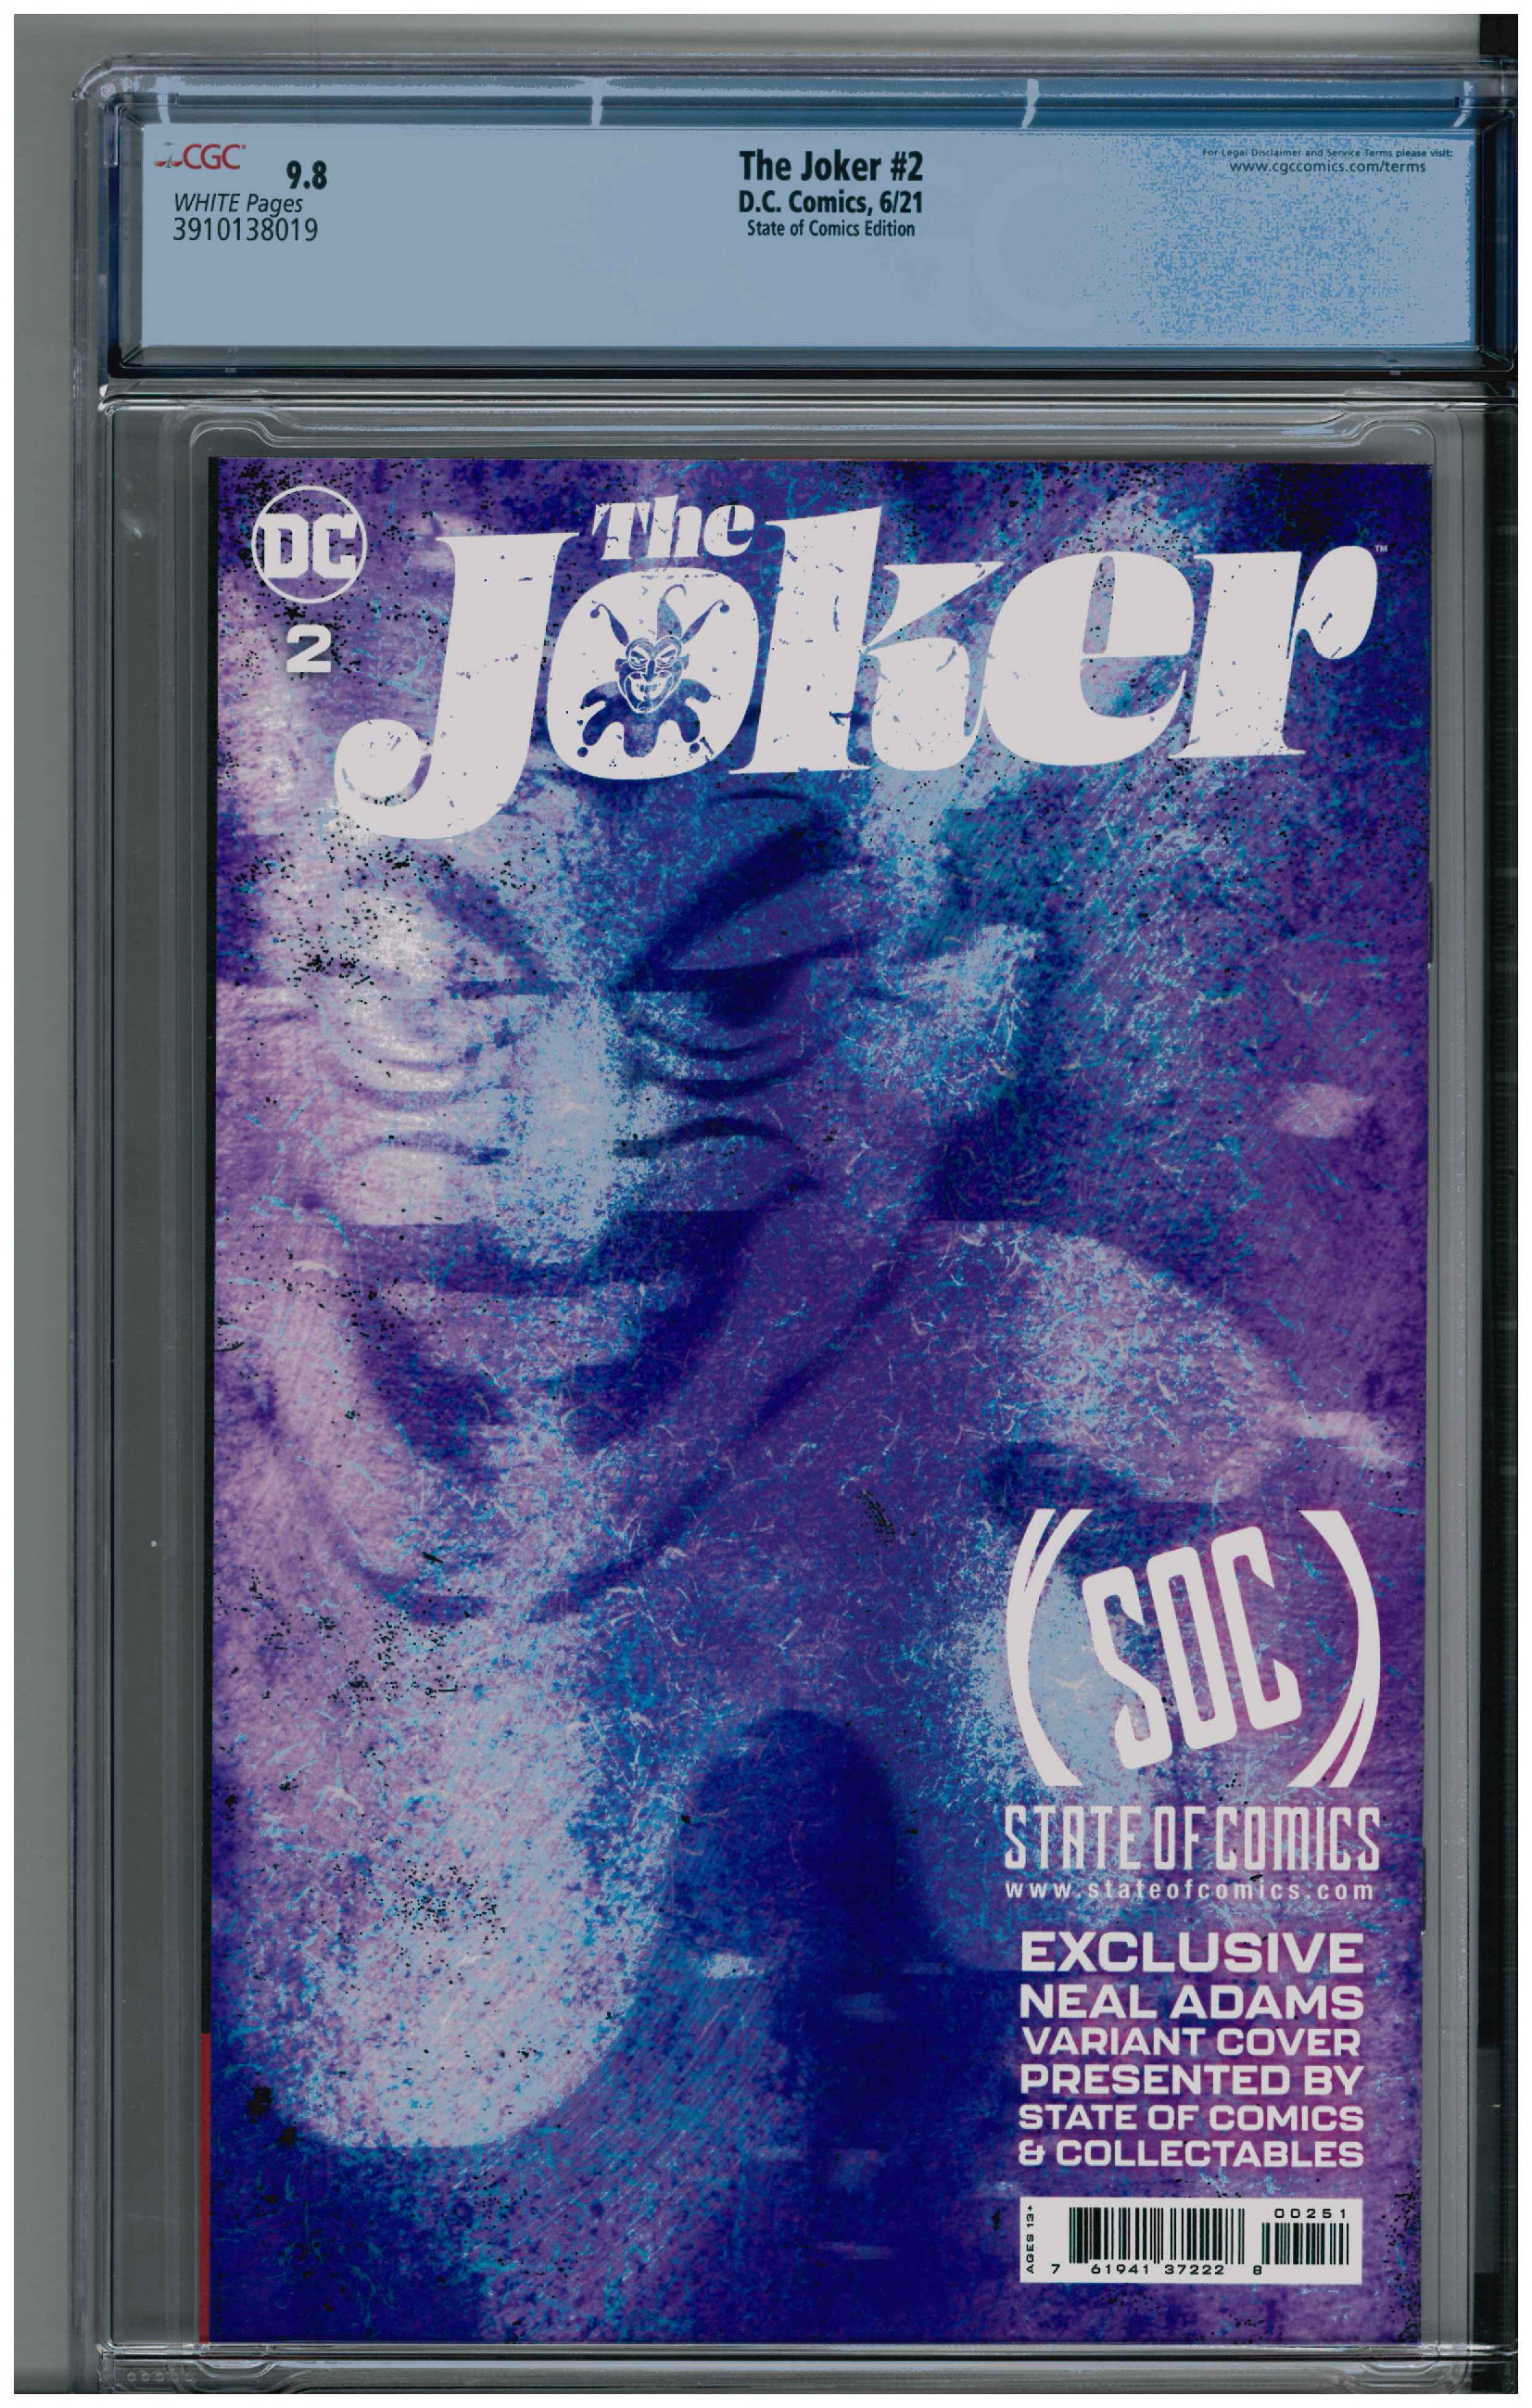 The Joker #2 backside